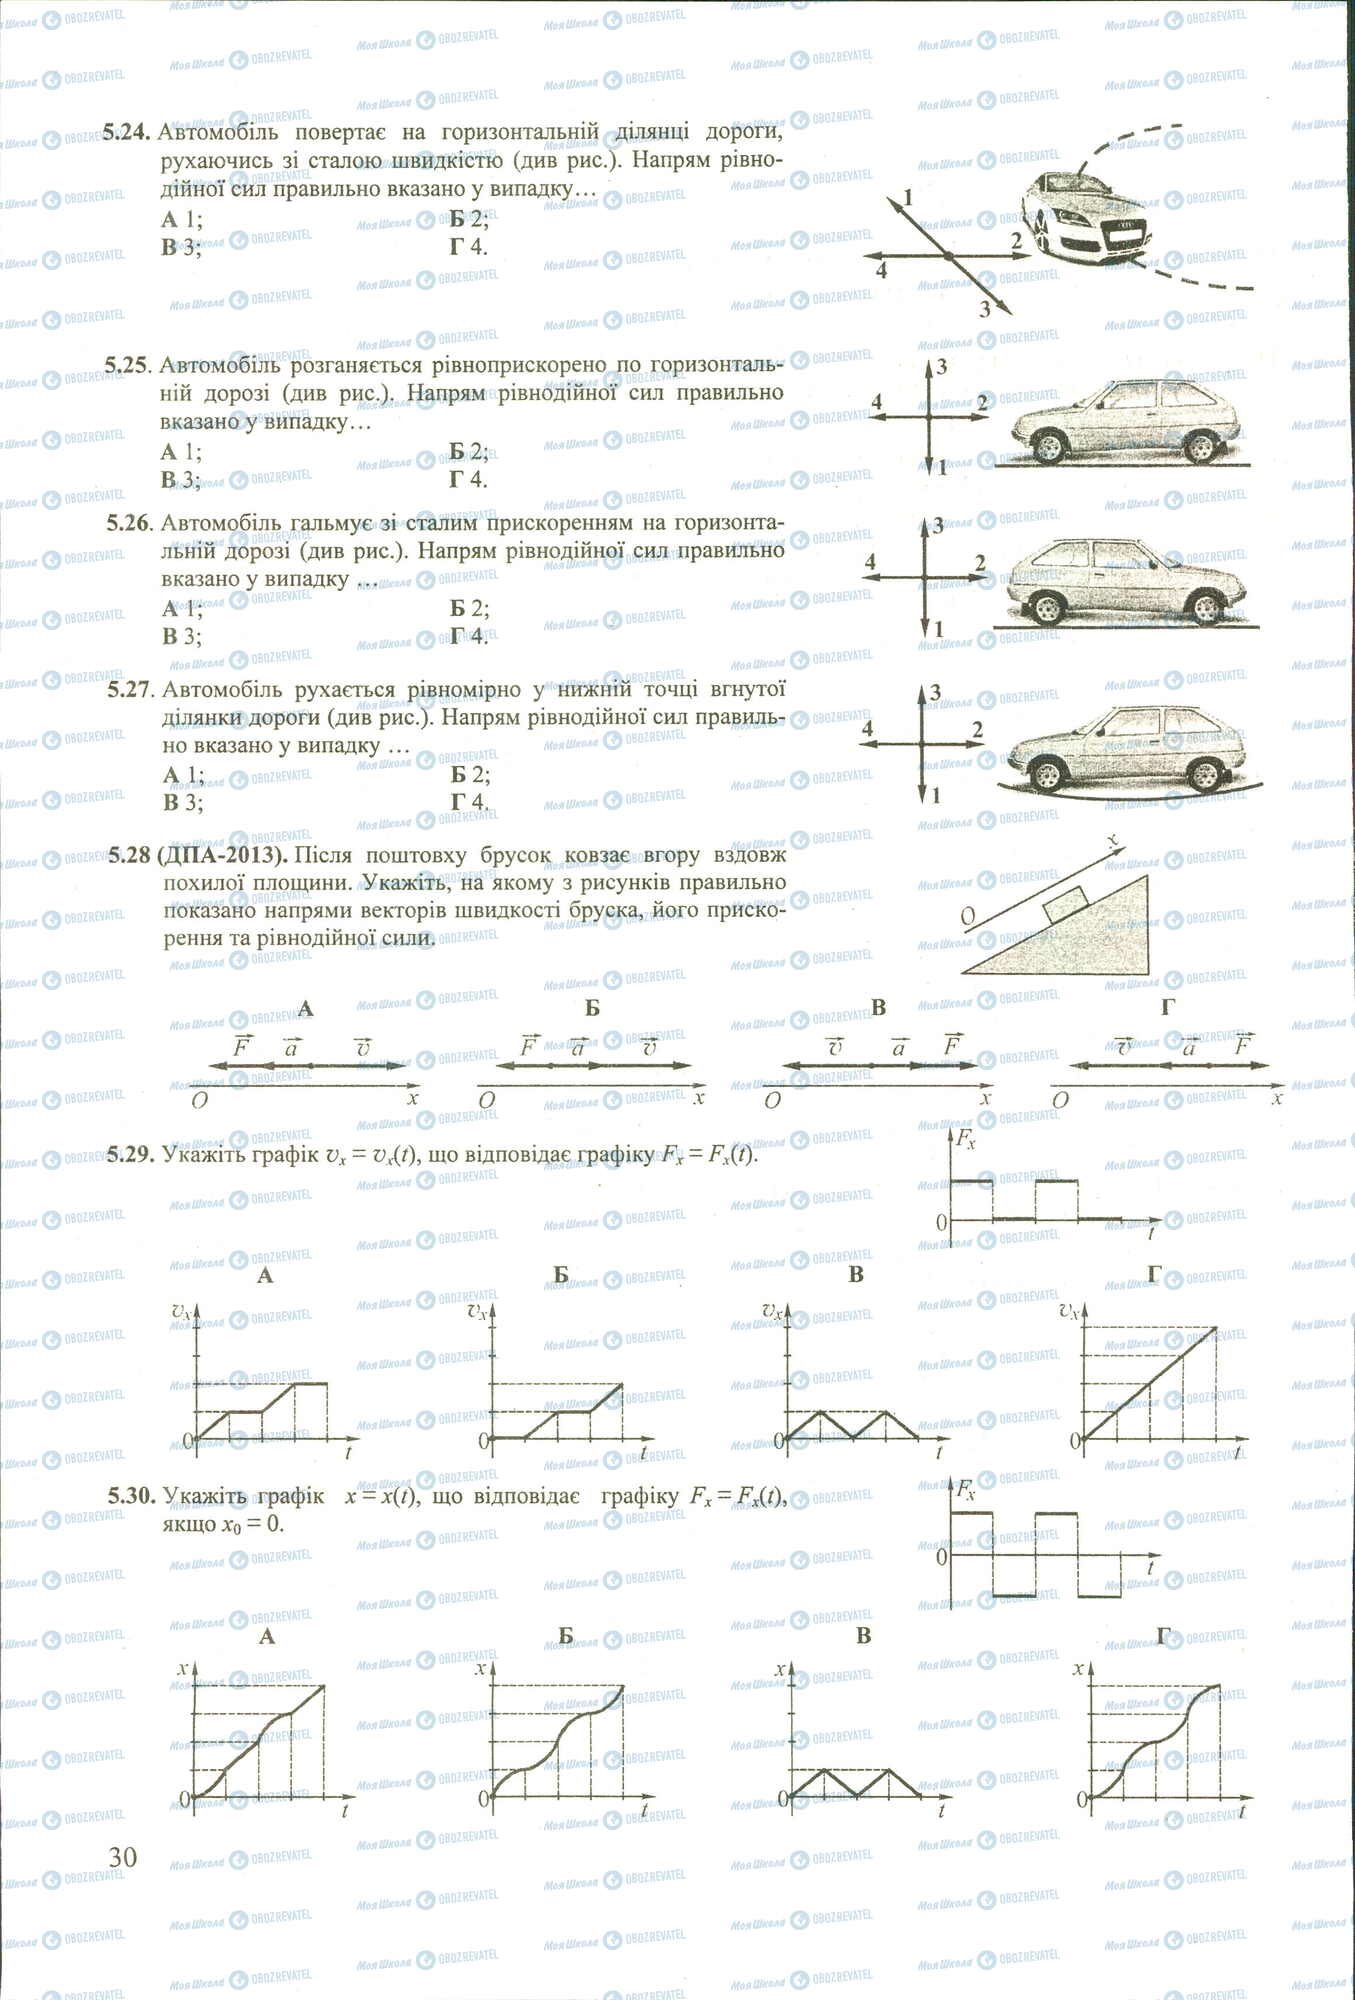 ЗНО Физика 11 класс страница 24-30